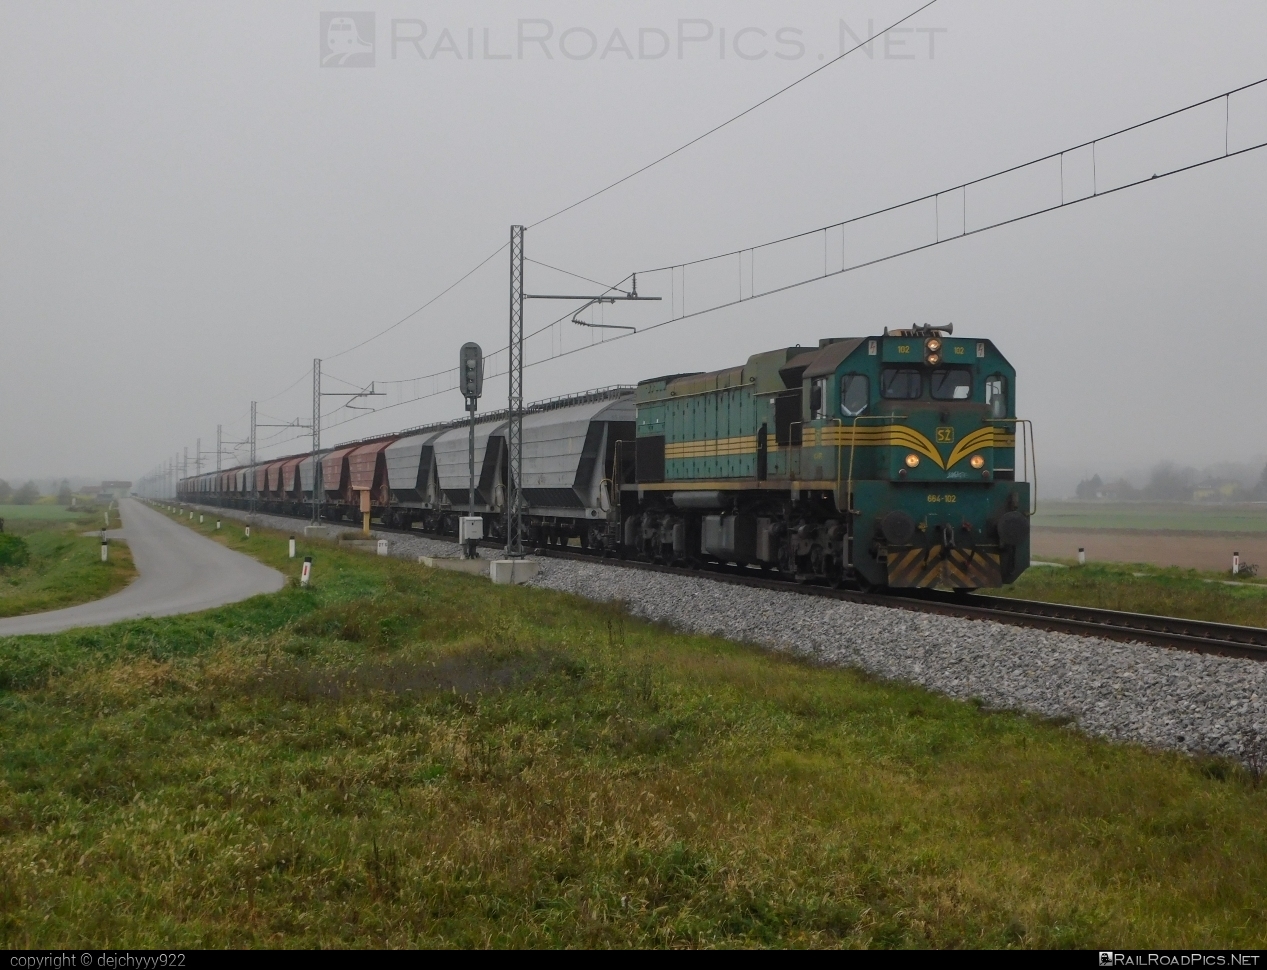 Đuro Đaković EMD G26 - 664-102 operated by Slovenske železnice #DuroDakovic #SlovenskeZeleznice #emdg26 #hopperwagon #jzClass664 #sz #szClass664